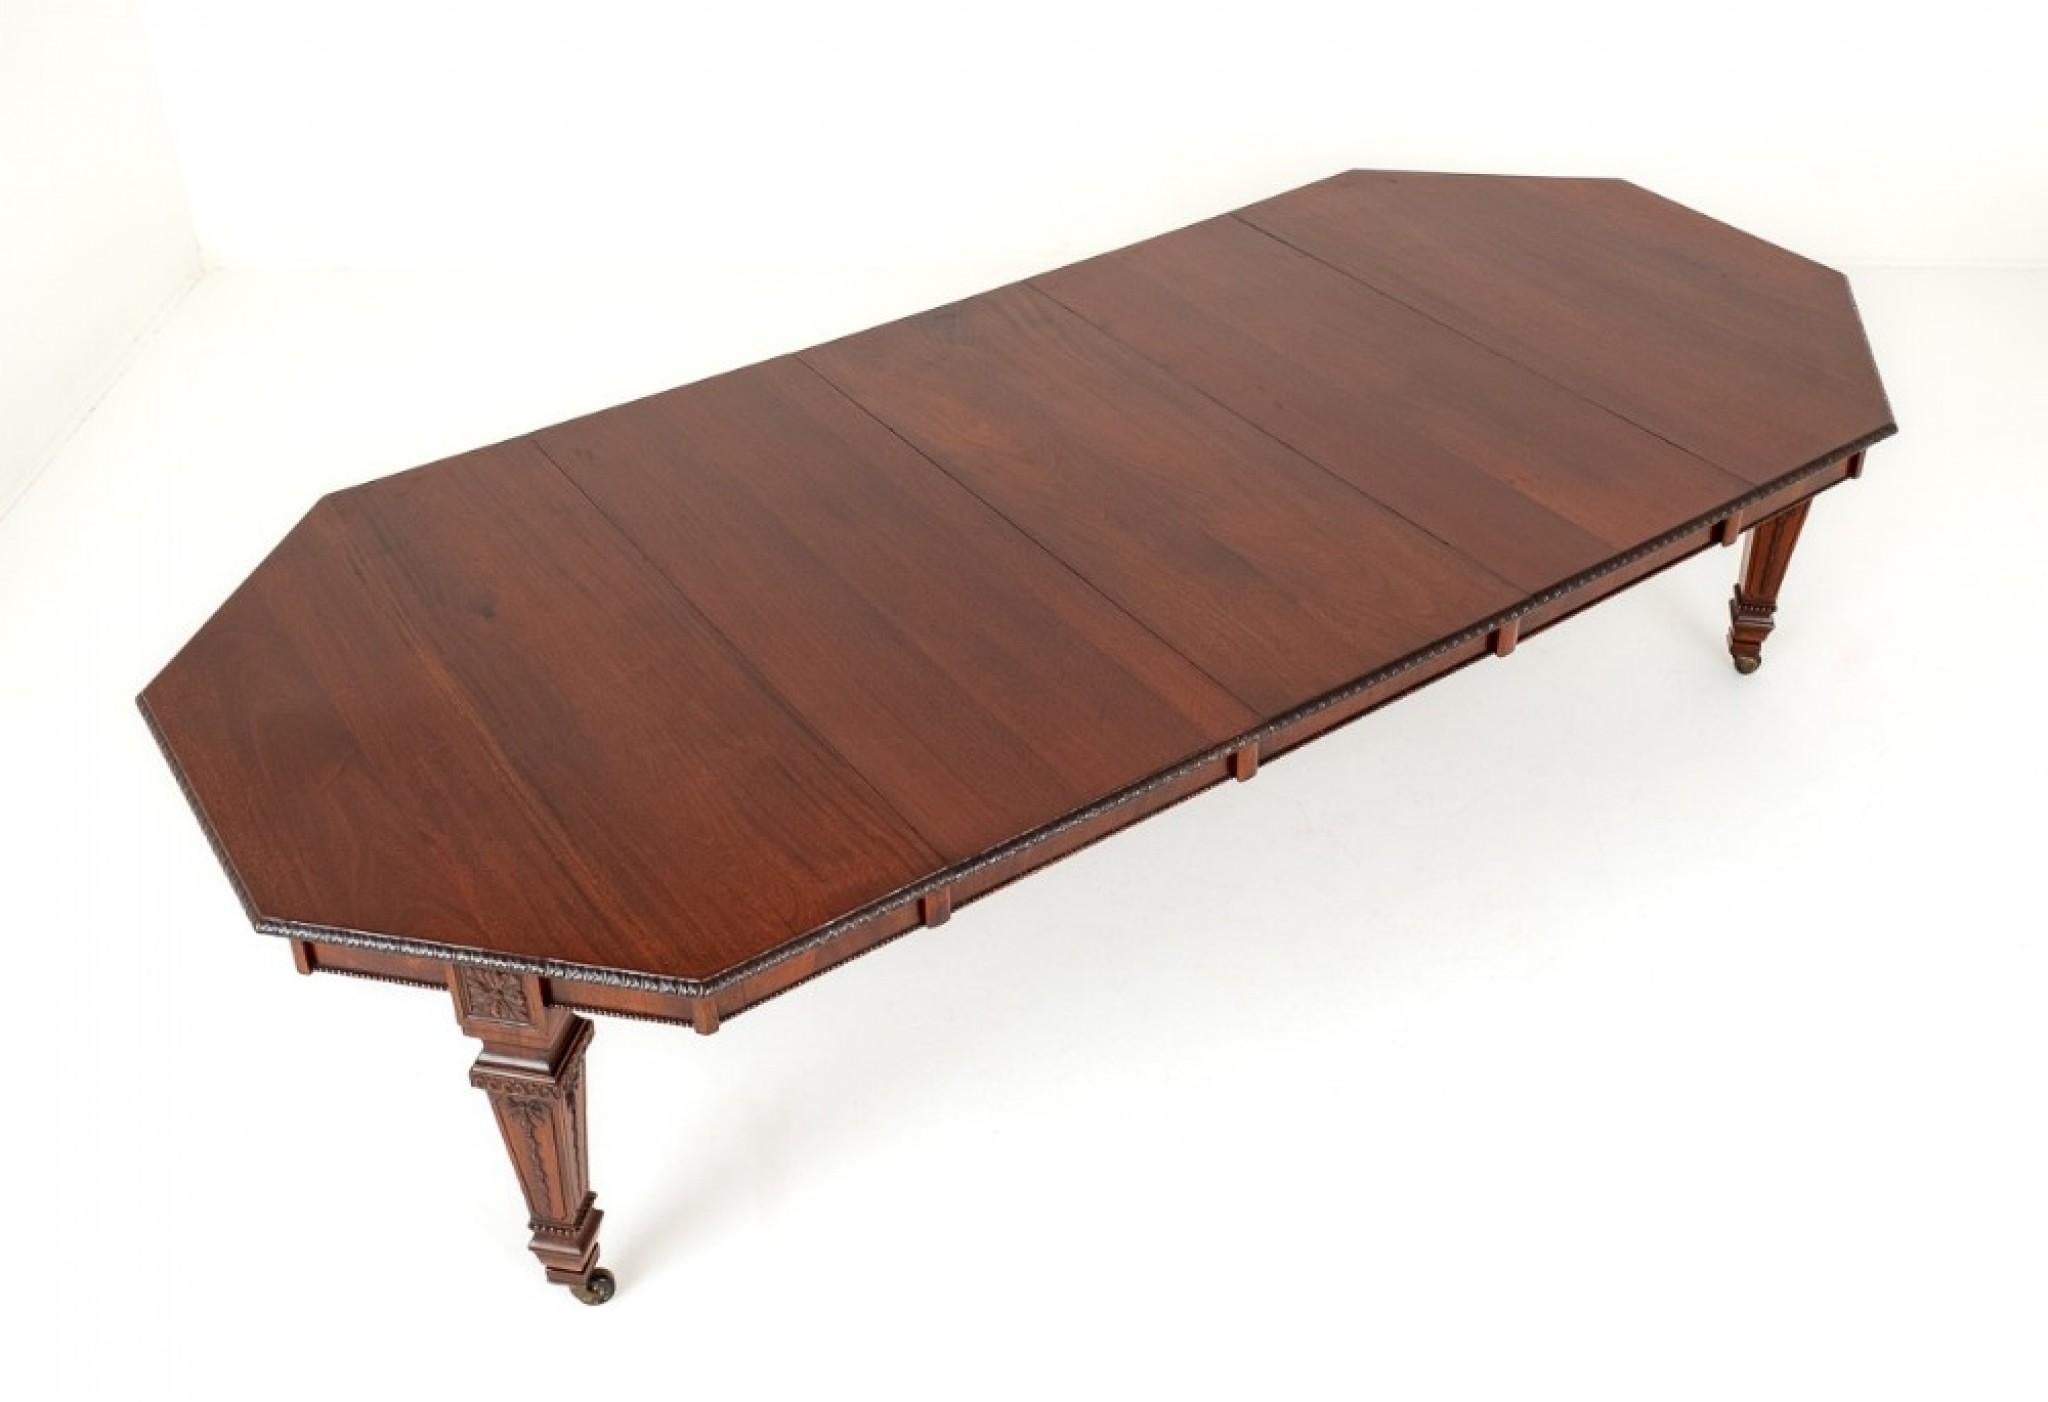 10 - 12 Sitzer viktorianischer achteckiger Mahagoni-Ausziehtisch.
Dieser Tisch ist von ungewöhnlicher Form und außergewöhnlicher Qualität. CIRCA 1850
Der Tisch steht auf konischen Beinen mit originalen Rollen aus Messing und Porzellan.
Die Beine